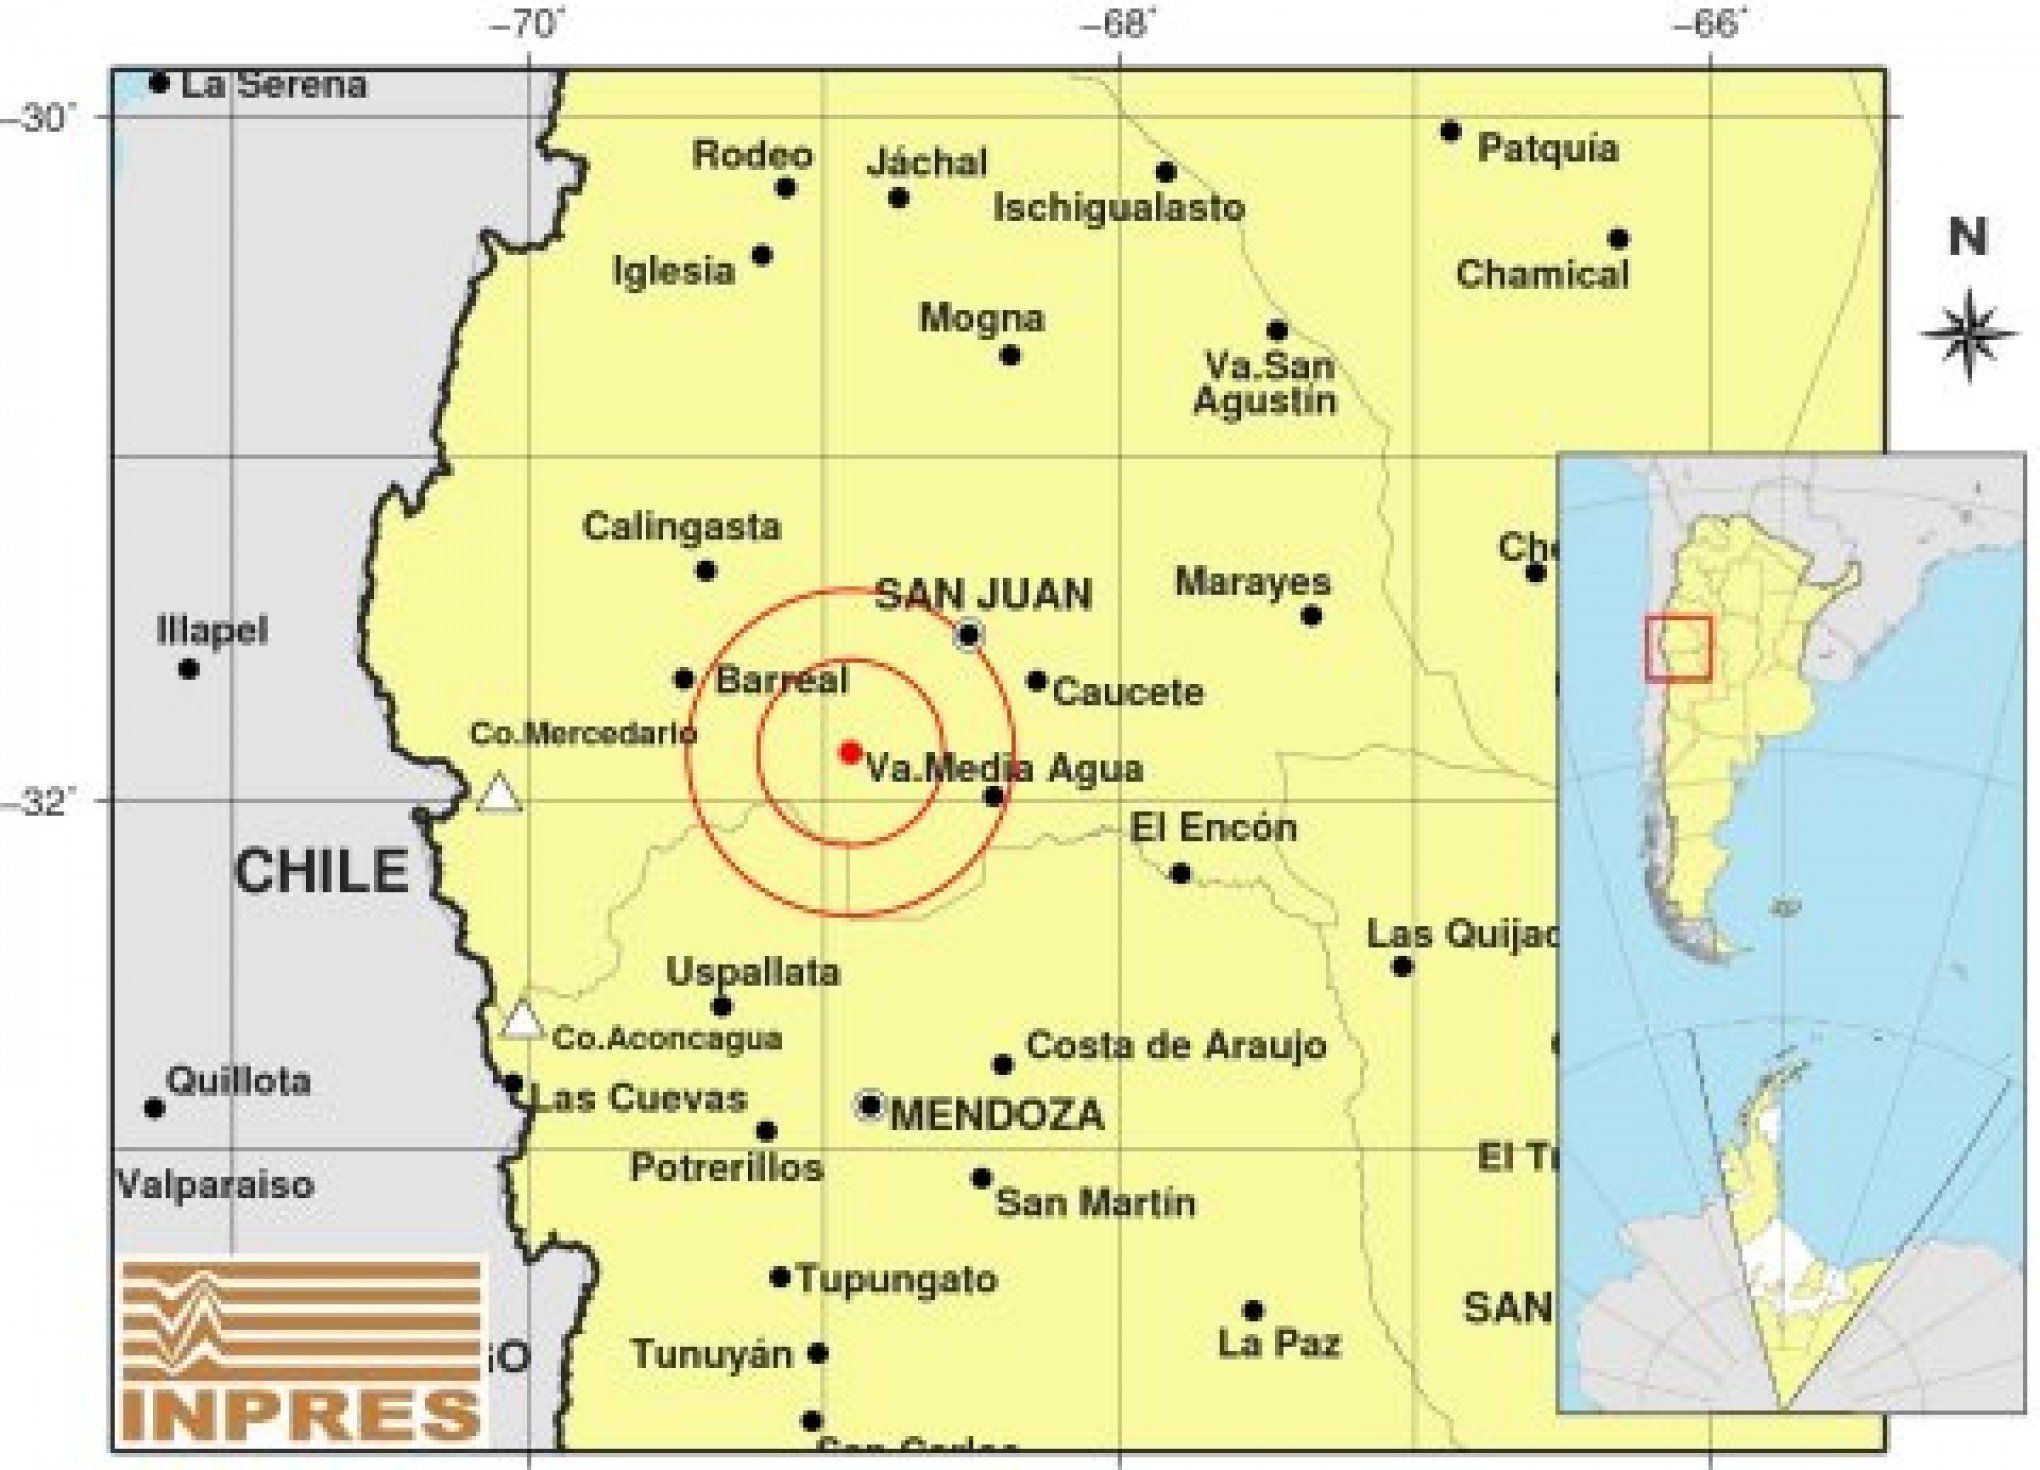 Terremoto atinge Argentina, perto de fronteira com o Chile